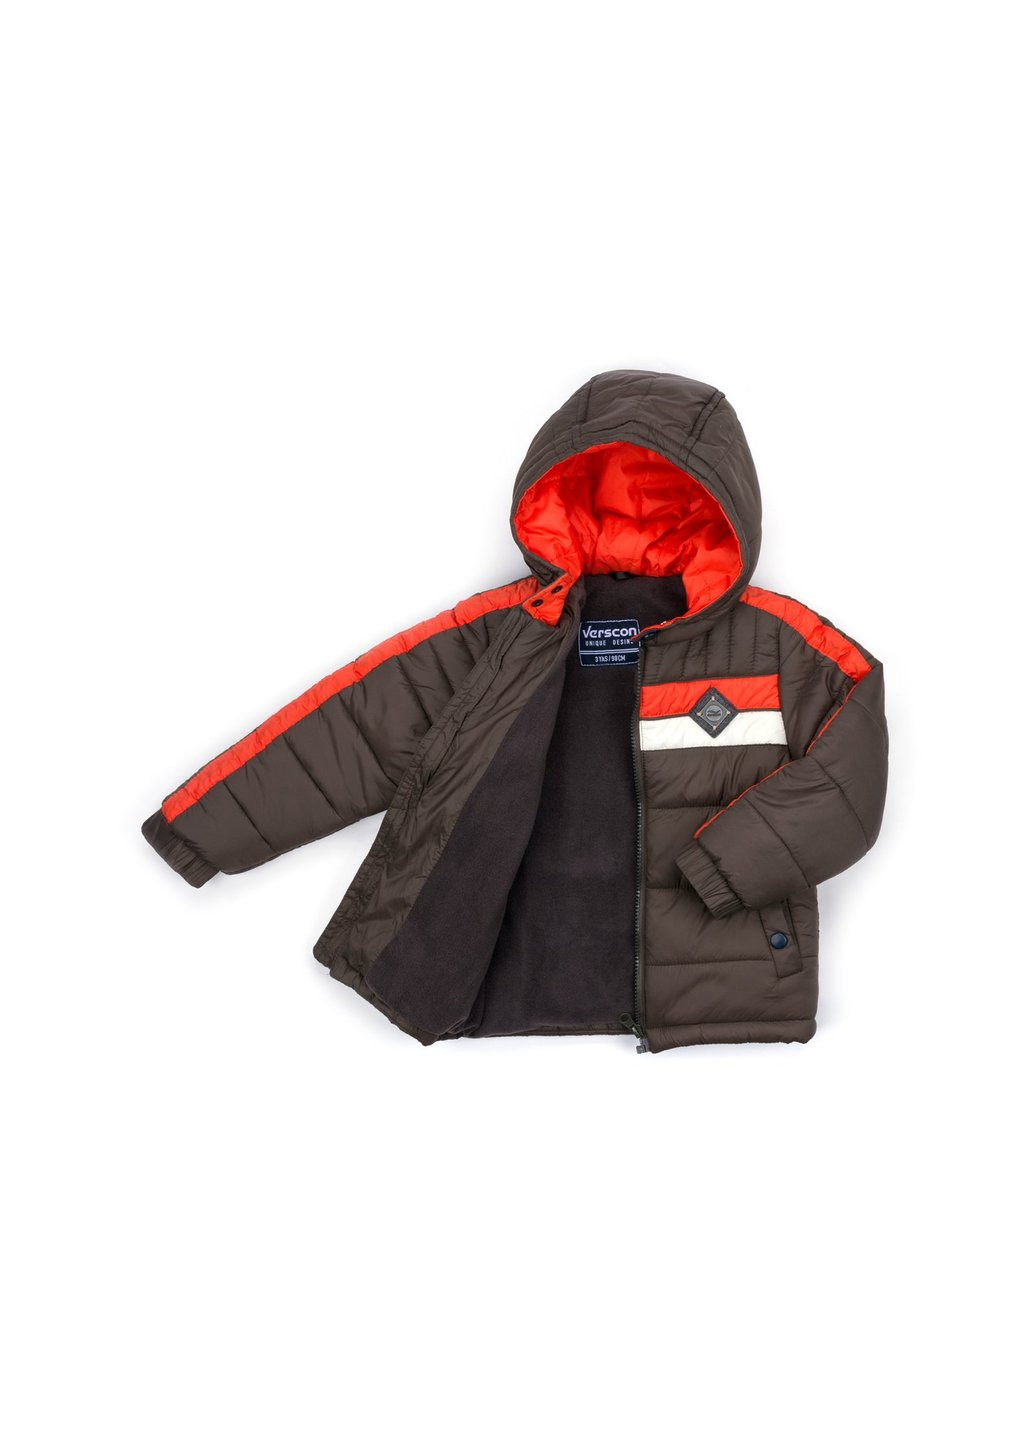 Коричнева зимня куртка з помаранчевою смугою (2663-104b-brown) Verscon